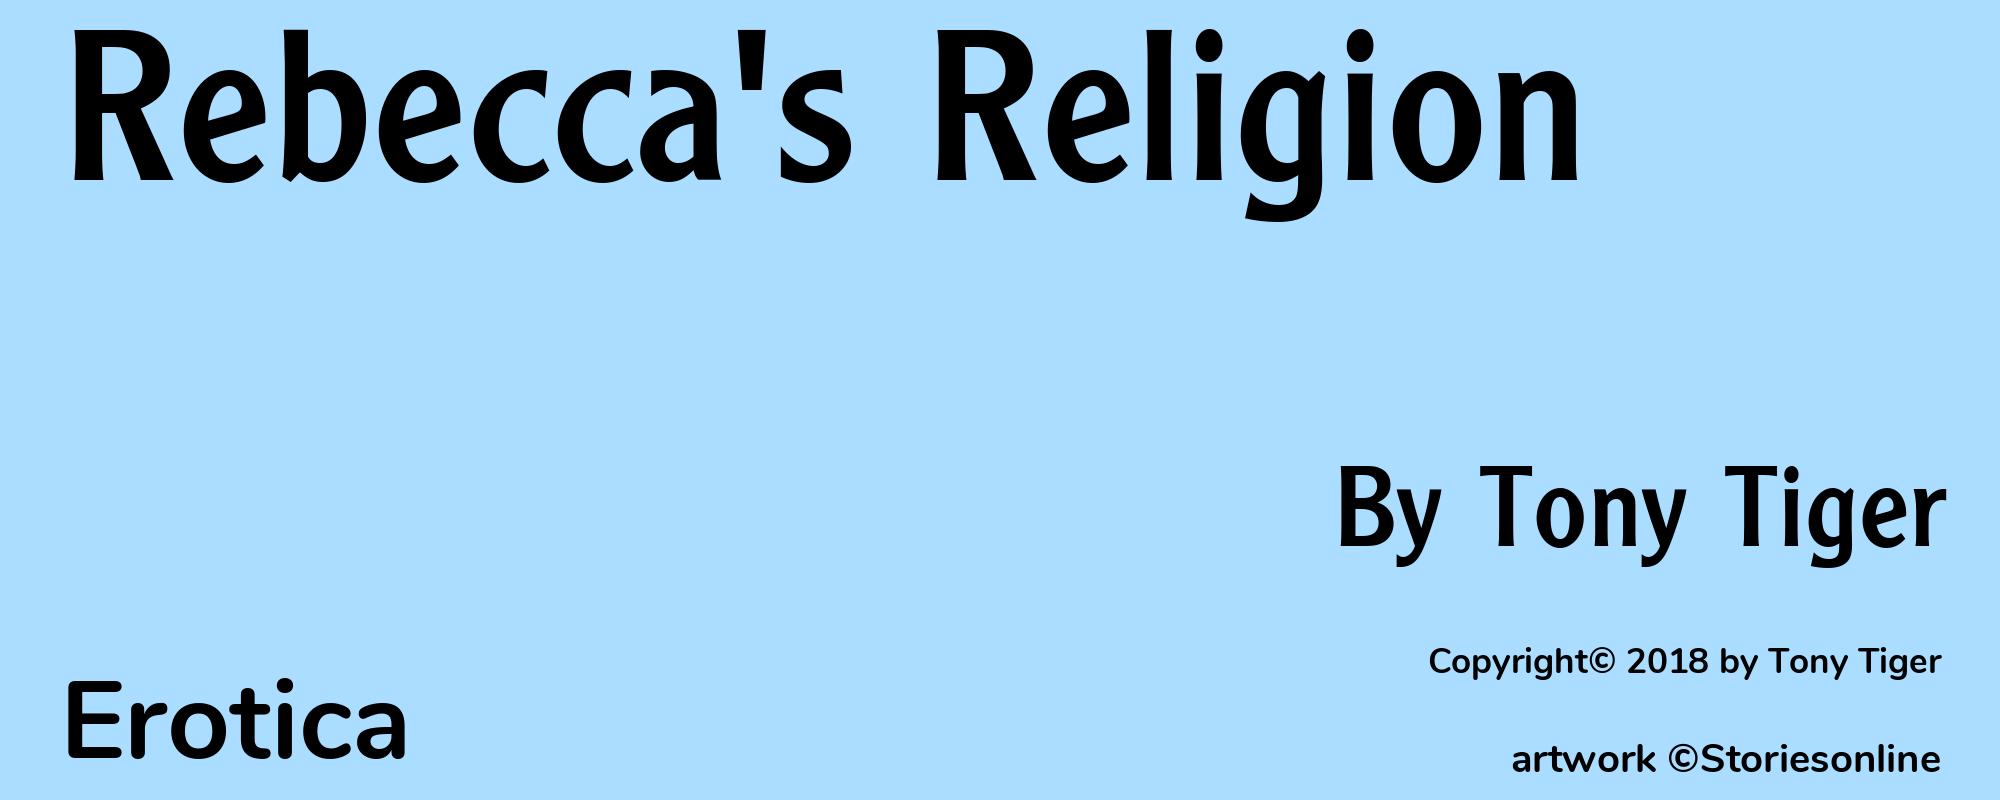 Rebecca's Religion - Cover